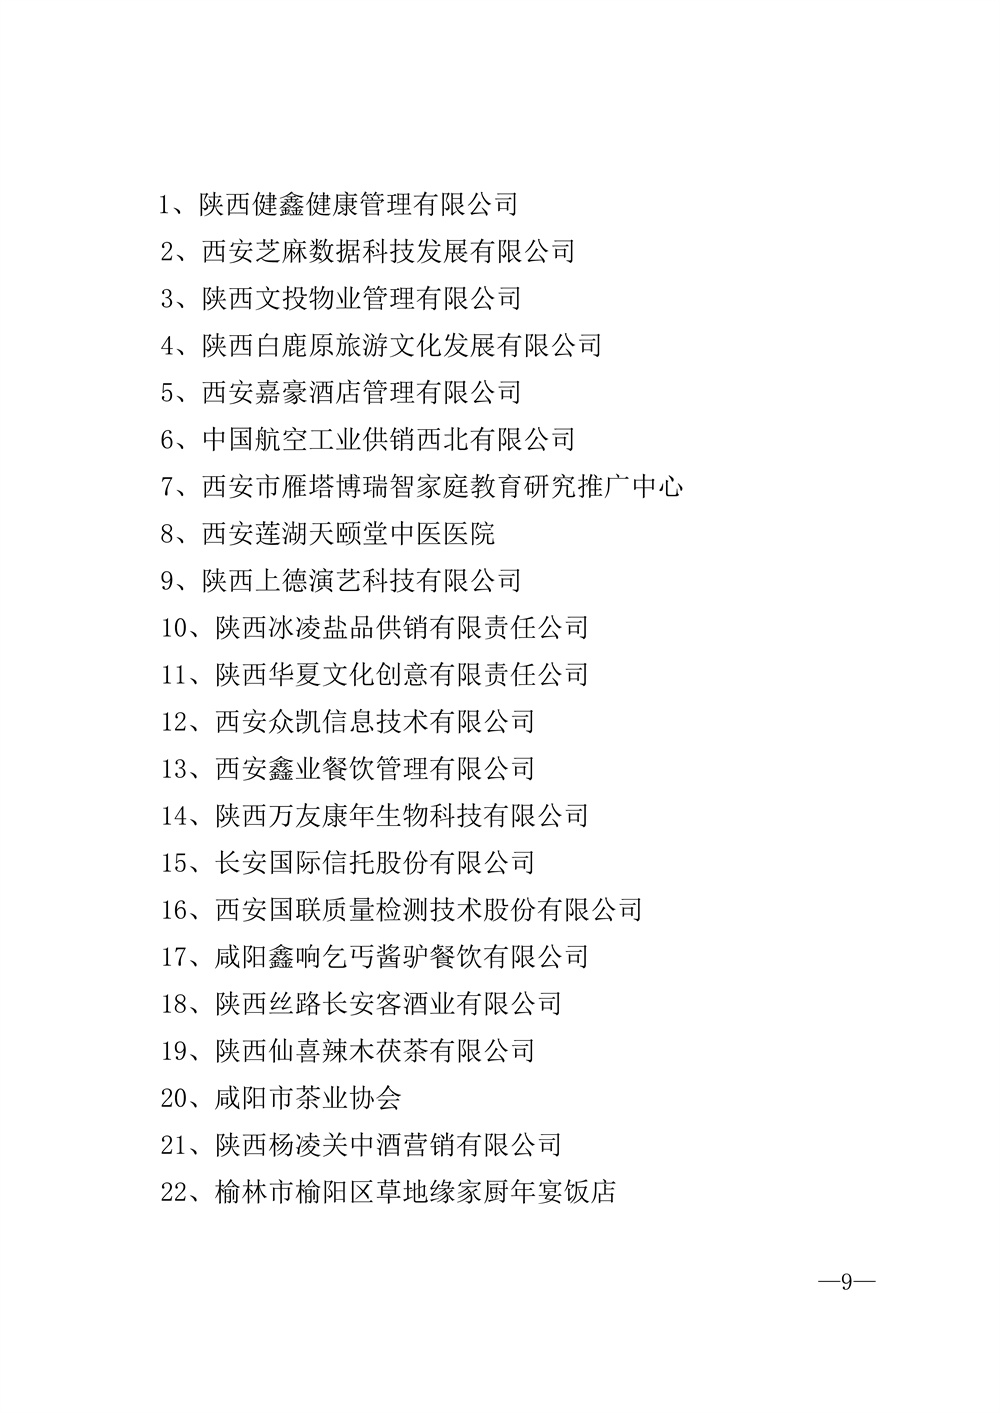 22-52陕西省2021年度品牌评选公示通知_页面_09.jpg